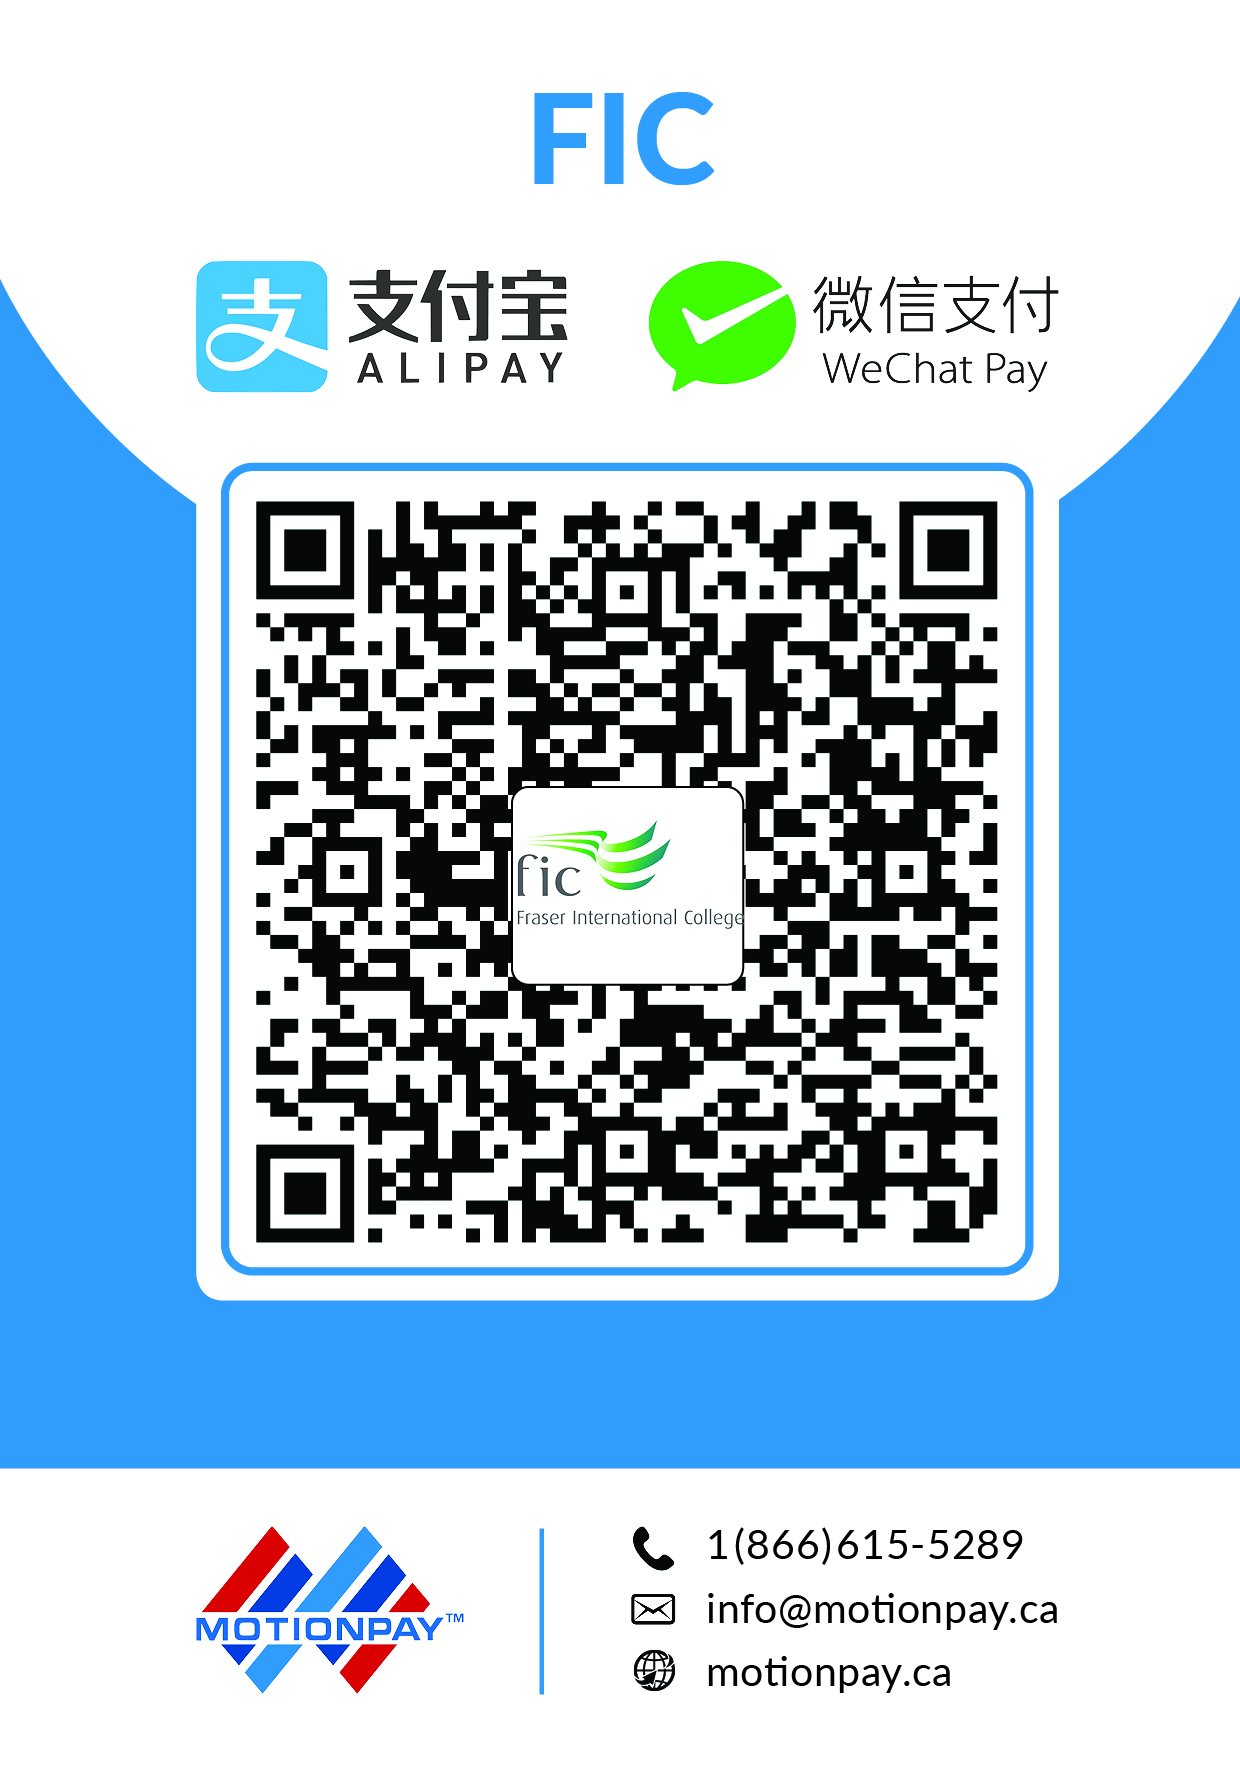 Fraser International College-Alipay& WeChat